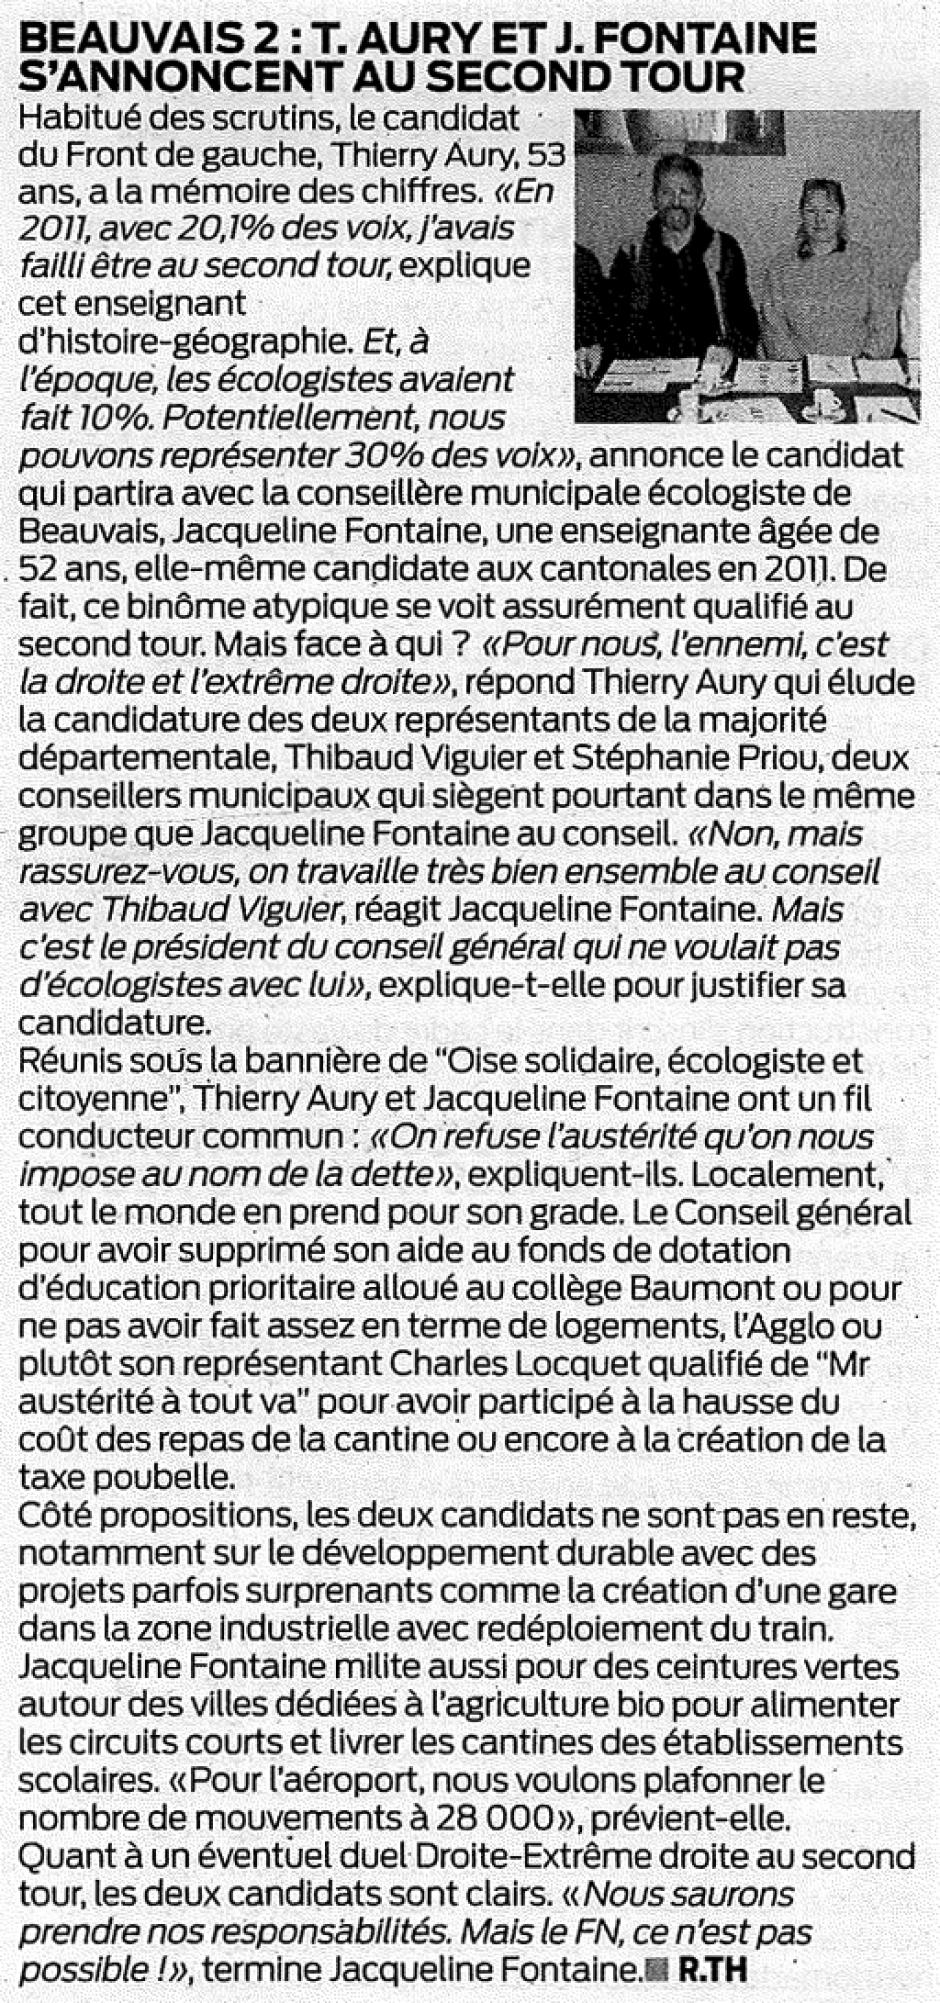 20150213-ObsBv-Beauvais-D2015-Thierry Aury et Jacqueline Fontaine s'annoncent au second tour